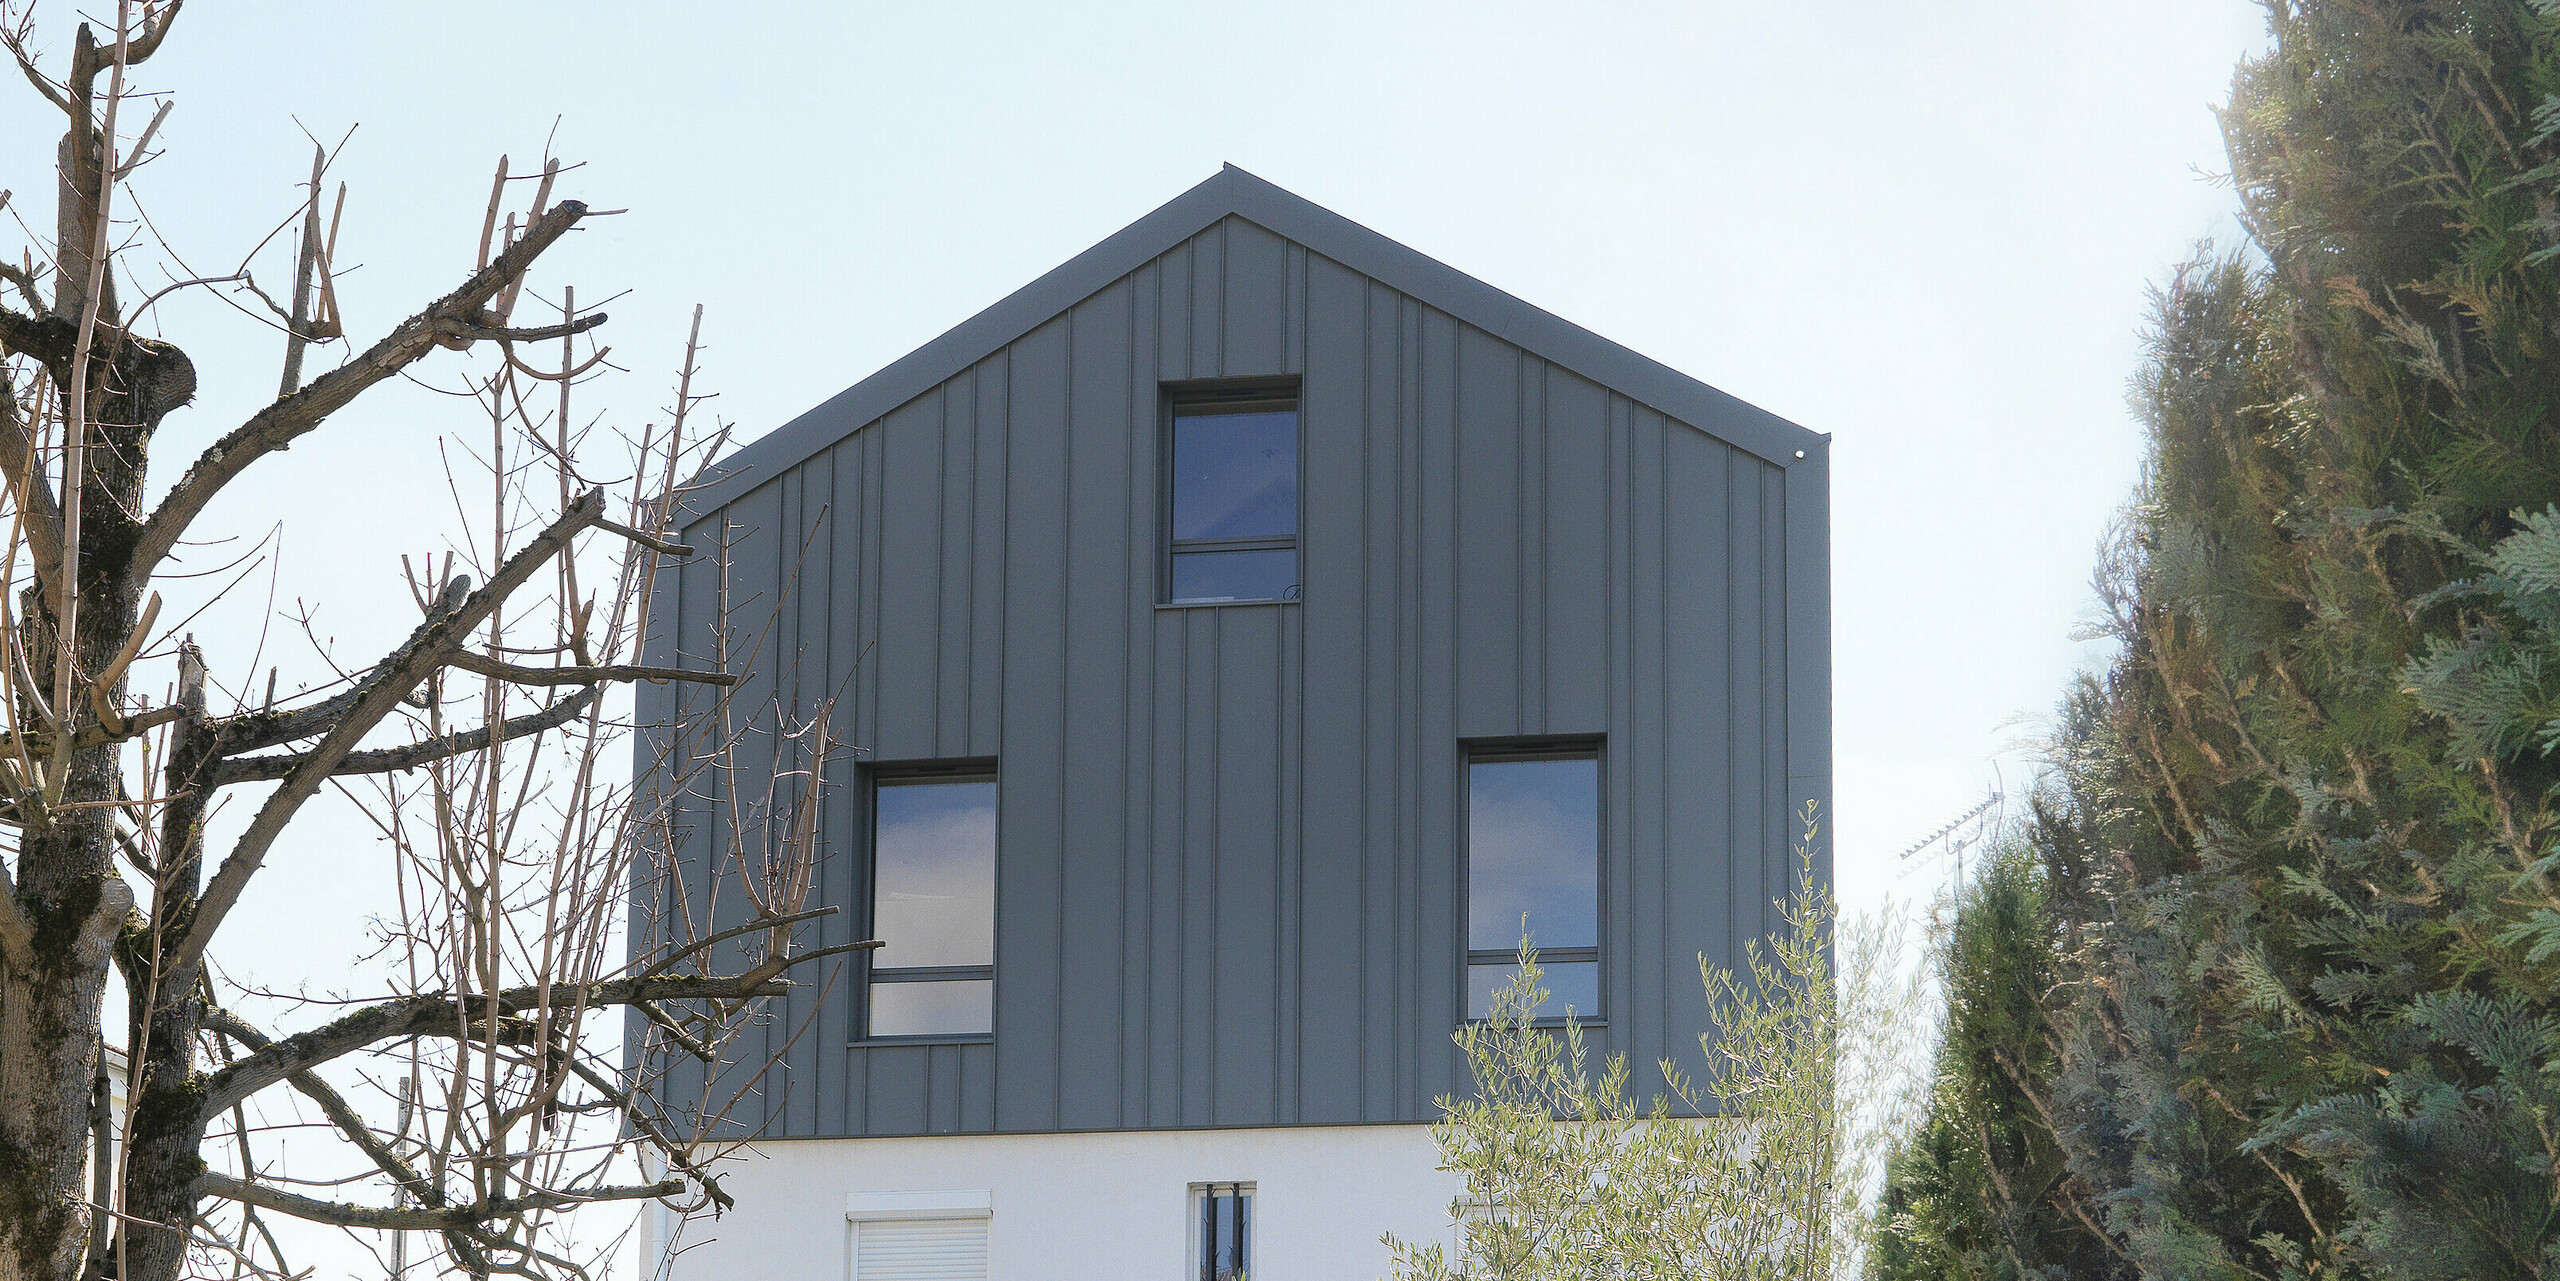 Pogled iz vrta na enodružinsko hišo v Houillesu v Franciji. Streha in fasada hiše sta prekriti s kombinacijo elementov PREFA Siding v P.10 beli barvi in trakovi PREFALZ v P.10 svetlo sivi barvi.